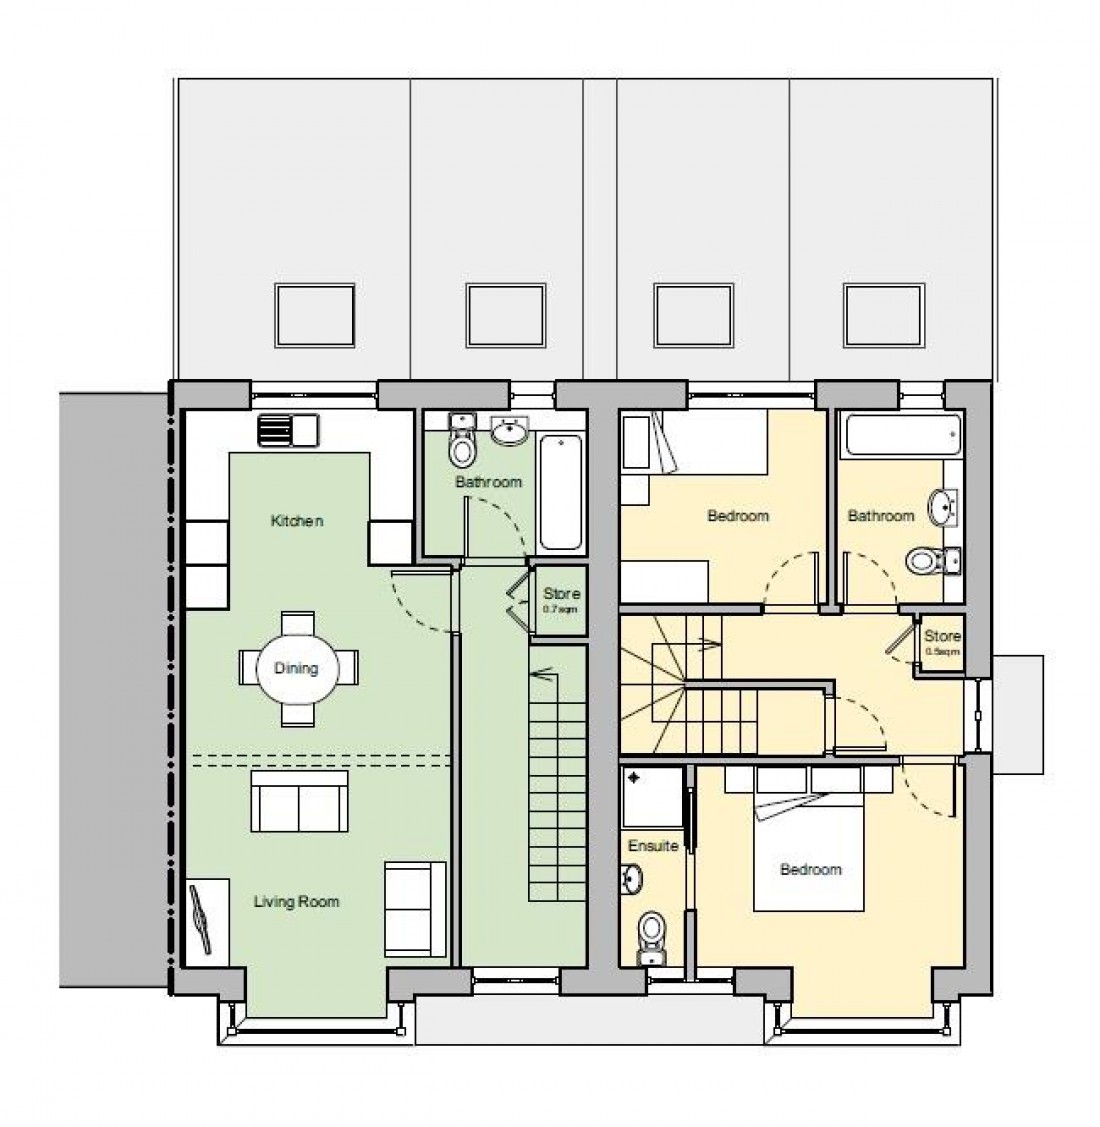 Floorplan for HOUSE + PLOT COMBO - BS4